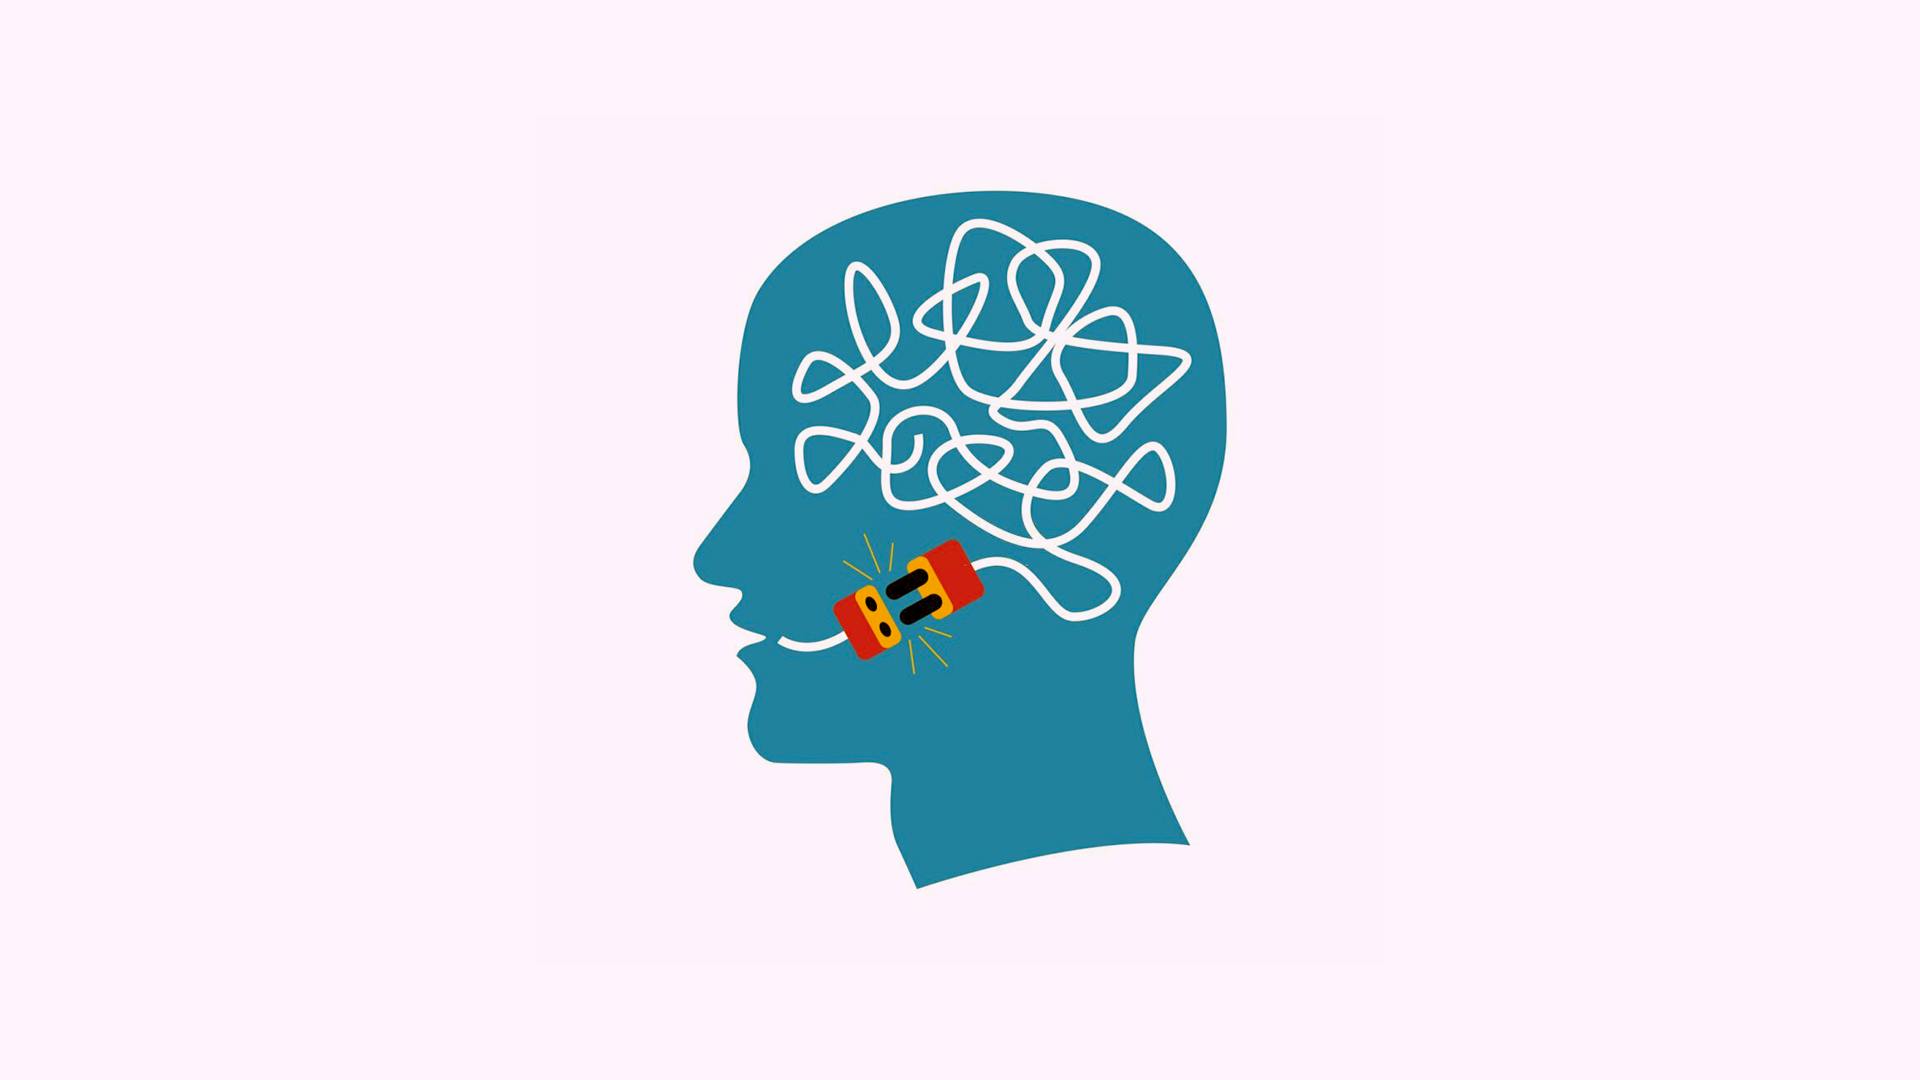 Rappresentazione grafica dell'afasia: un cervello scollegato da una spina che dovrebbe metterlo in connessione con la bocca.